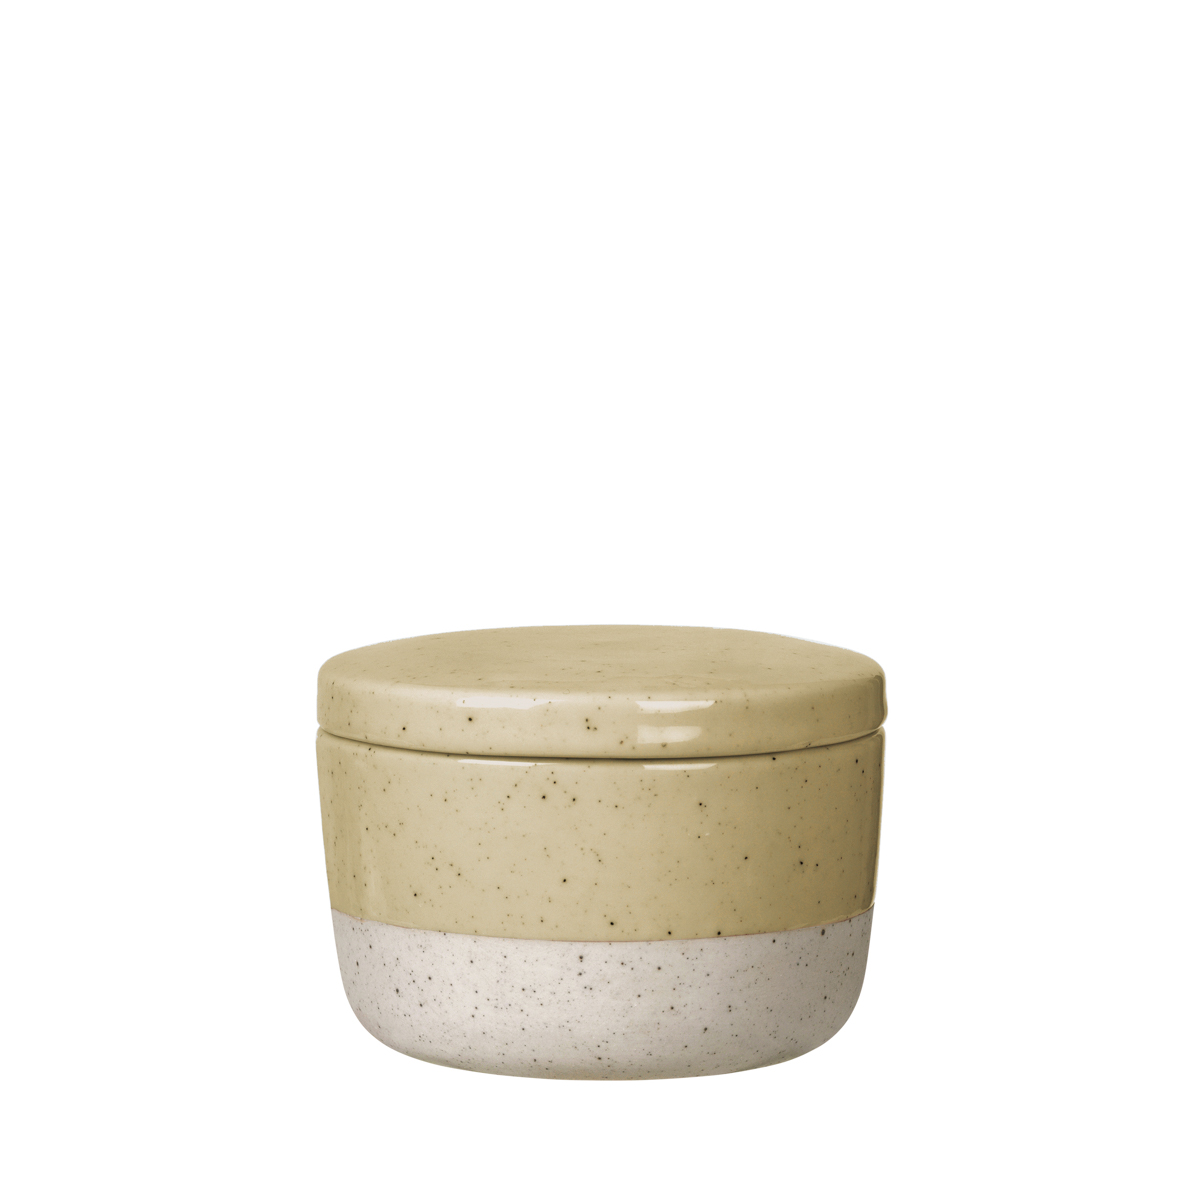 Zuckerdose -SABLO- Savannah 150 ml, Ø 8,5 cm. Material: Keramik. Von Blomus.